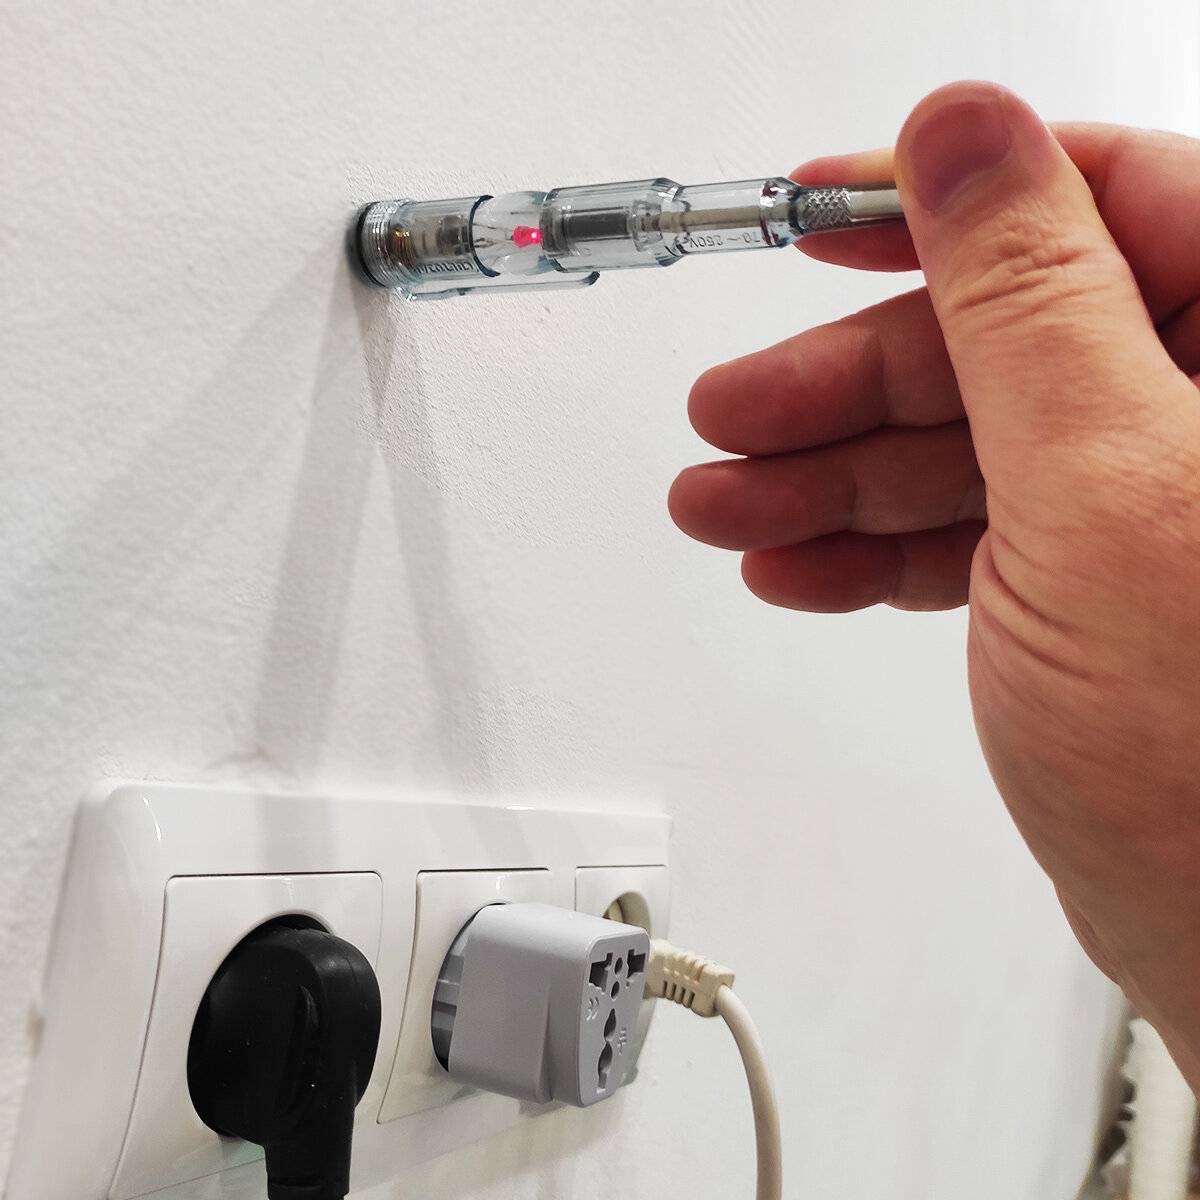 Как найти проводку в стене: поиск специальным прибором и без него